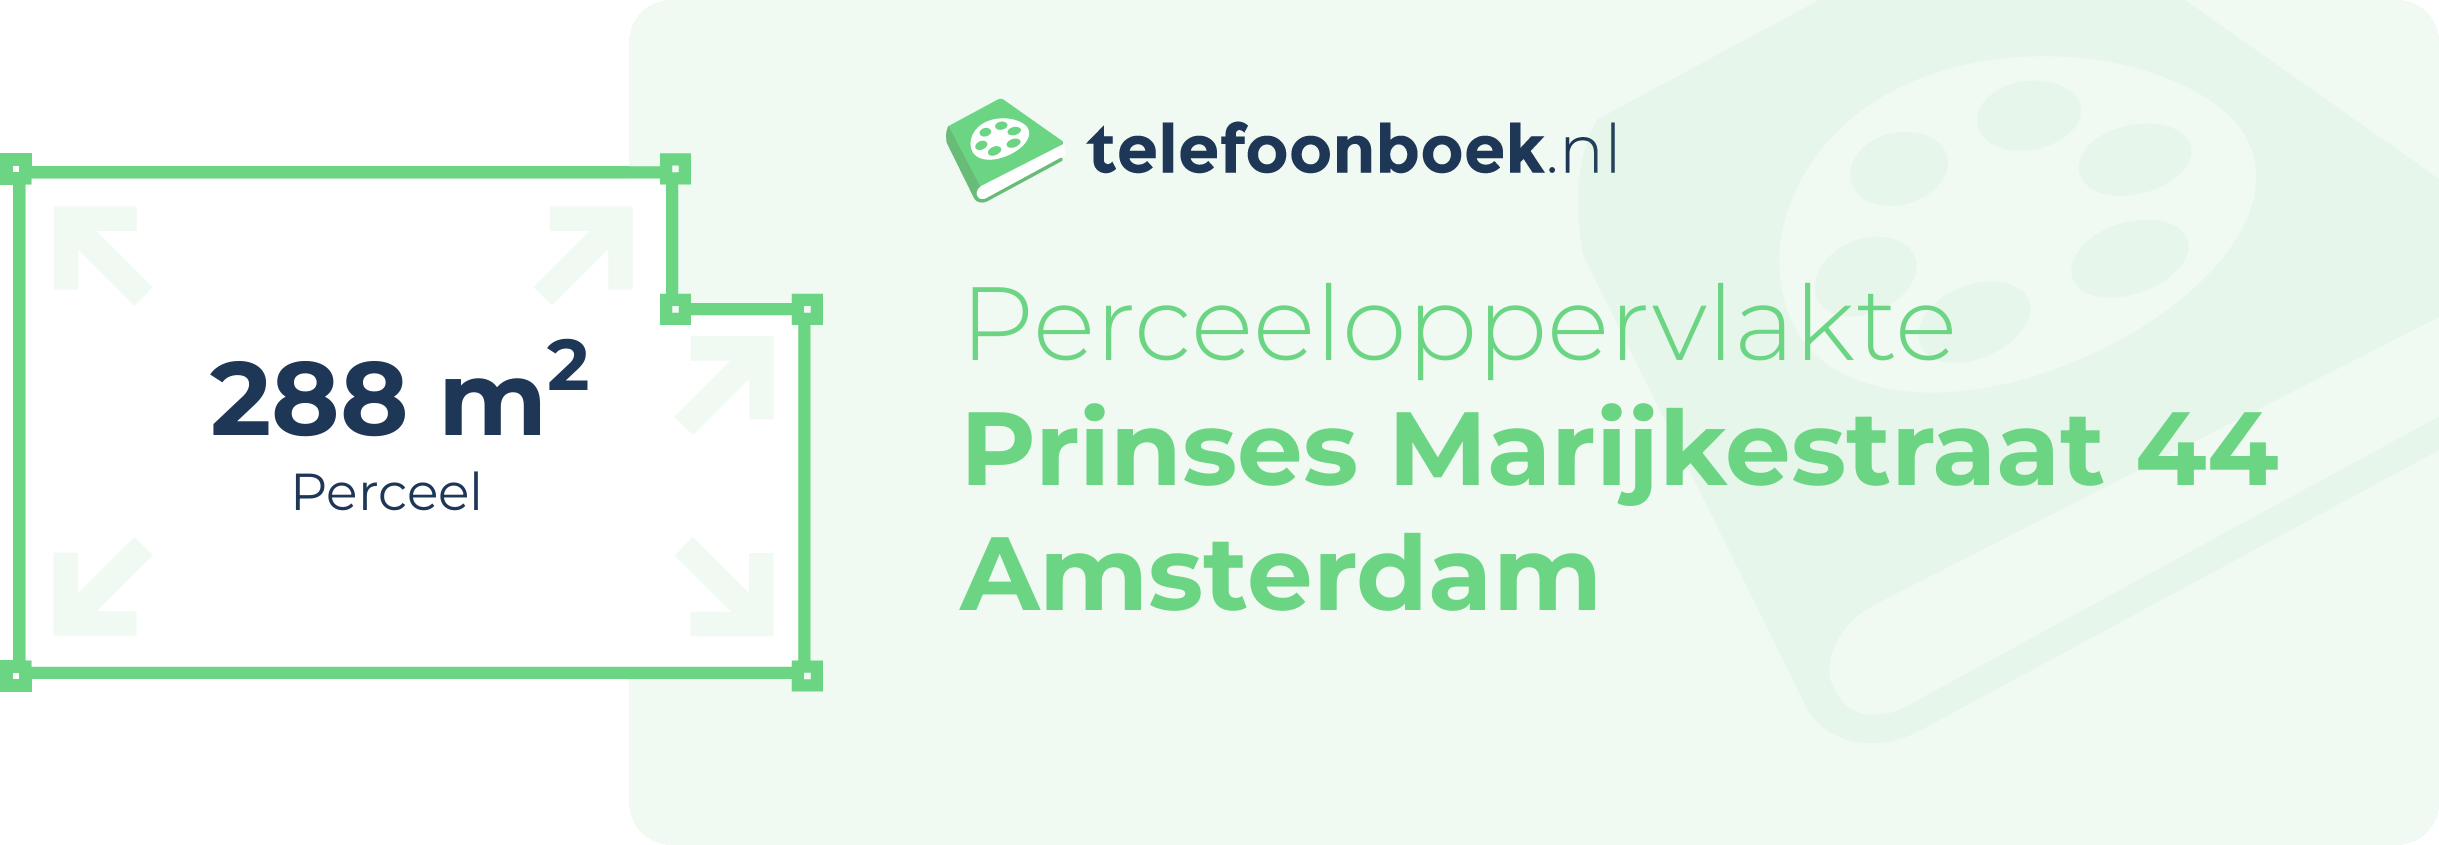 Perceeloppervlakte Prinses Marijkestraat 44 Amsterdam